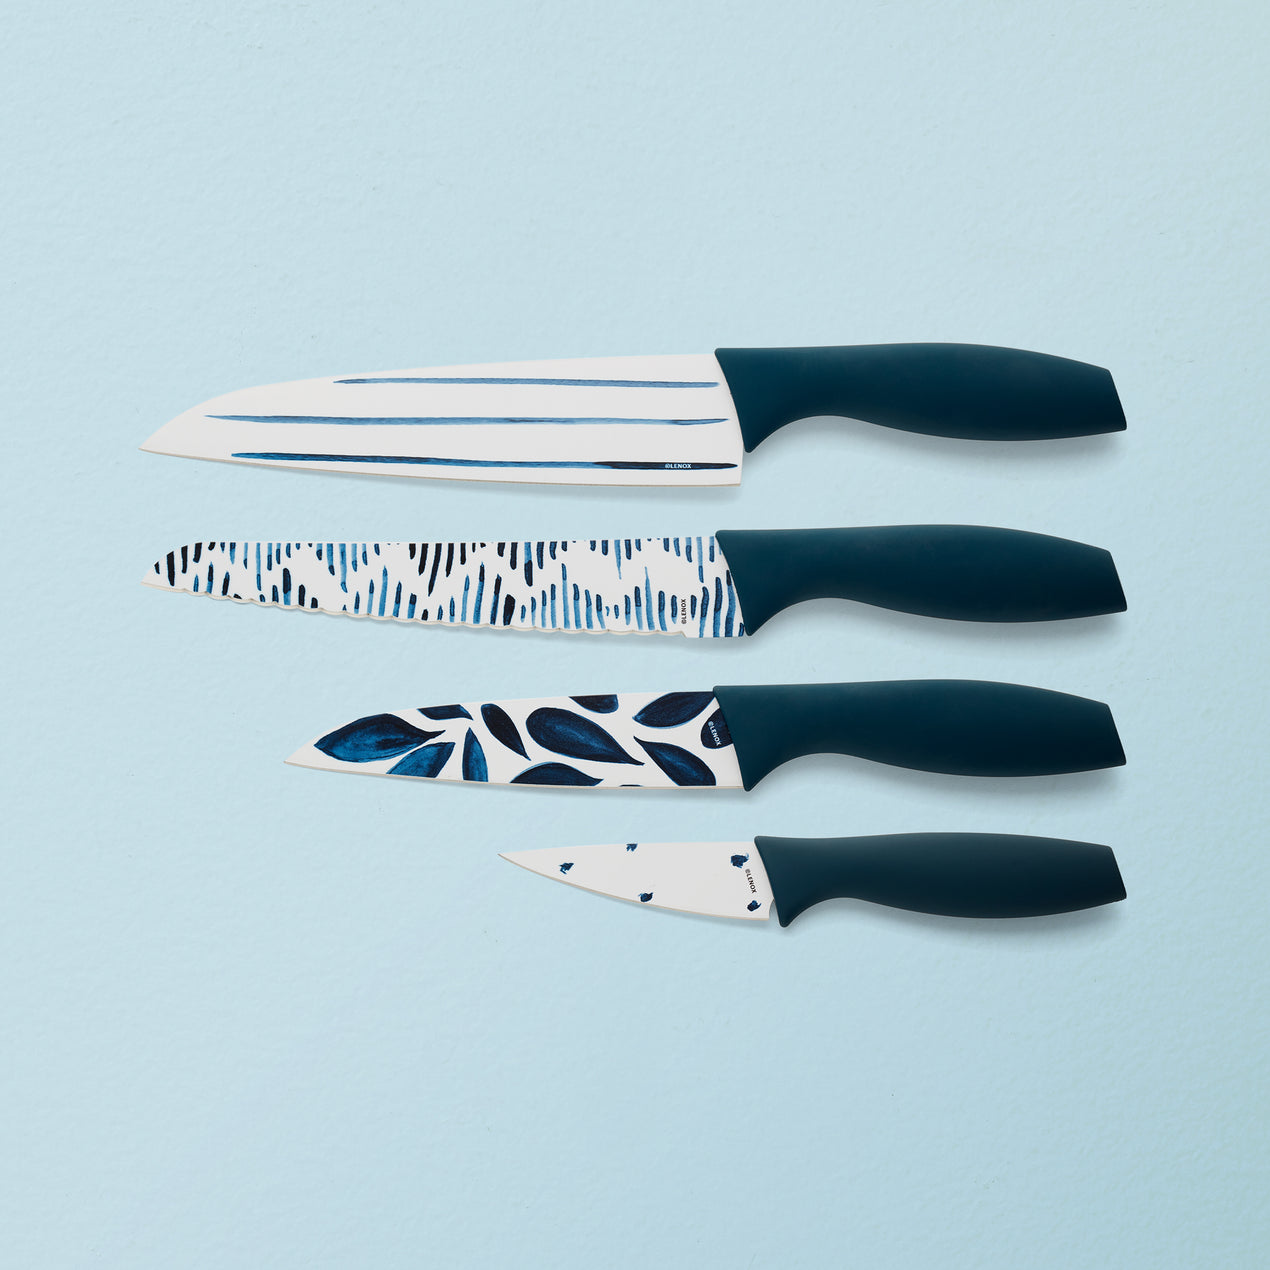 Blue Bay 4-piece Knife Set